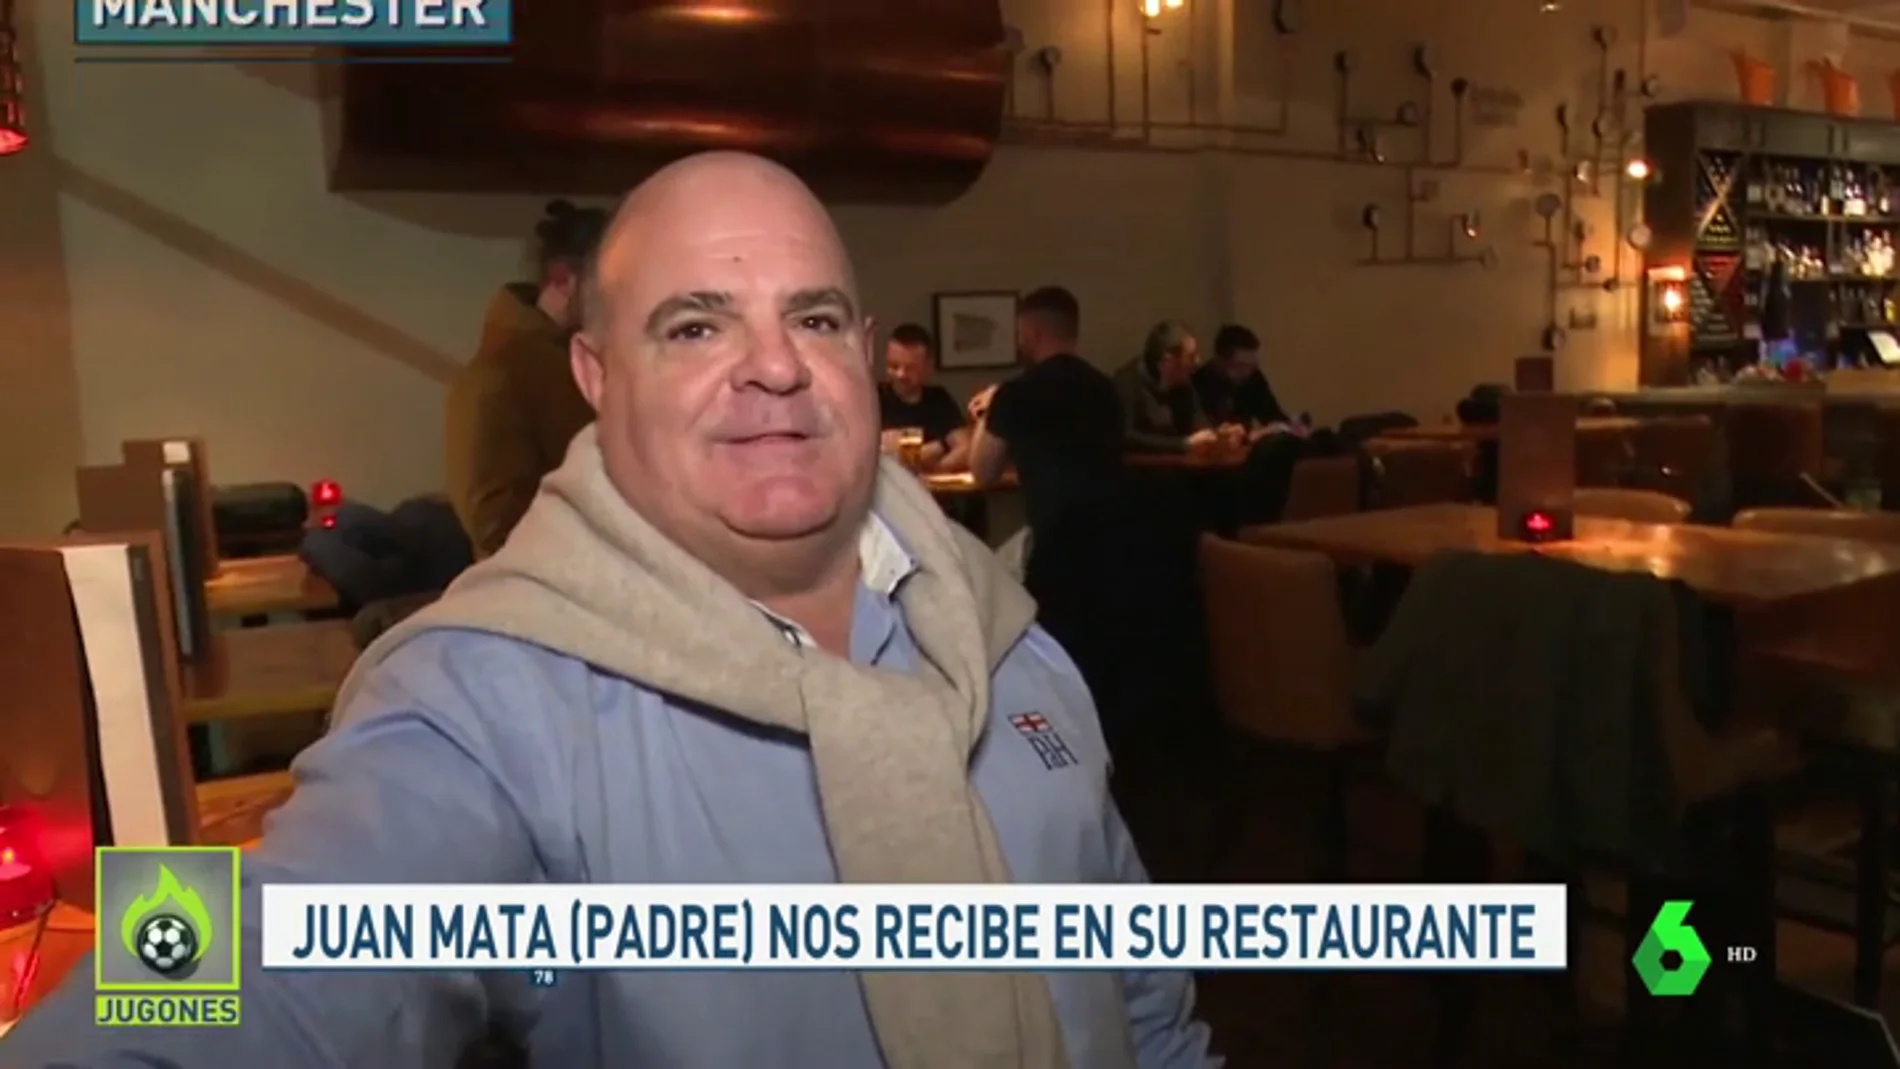 El padre de Juan Mata, jefe del 'restaurante de las estrellas': "Mi hijo puede volver a España"